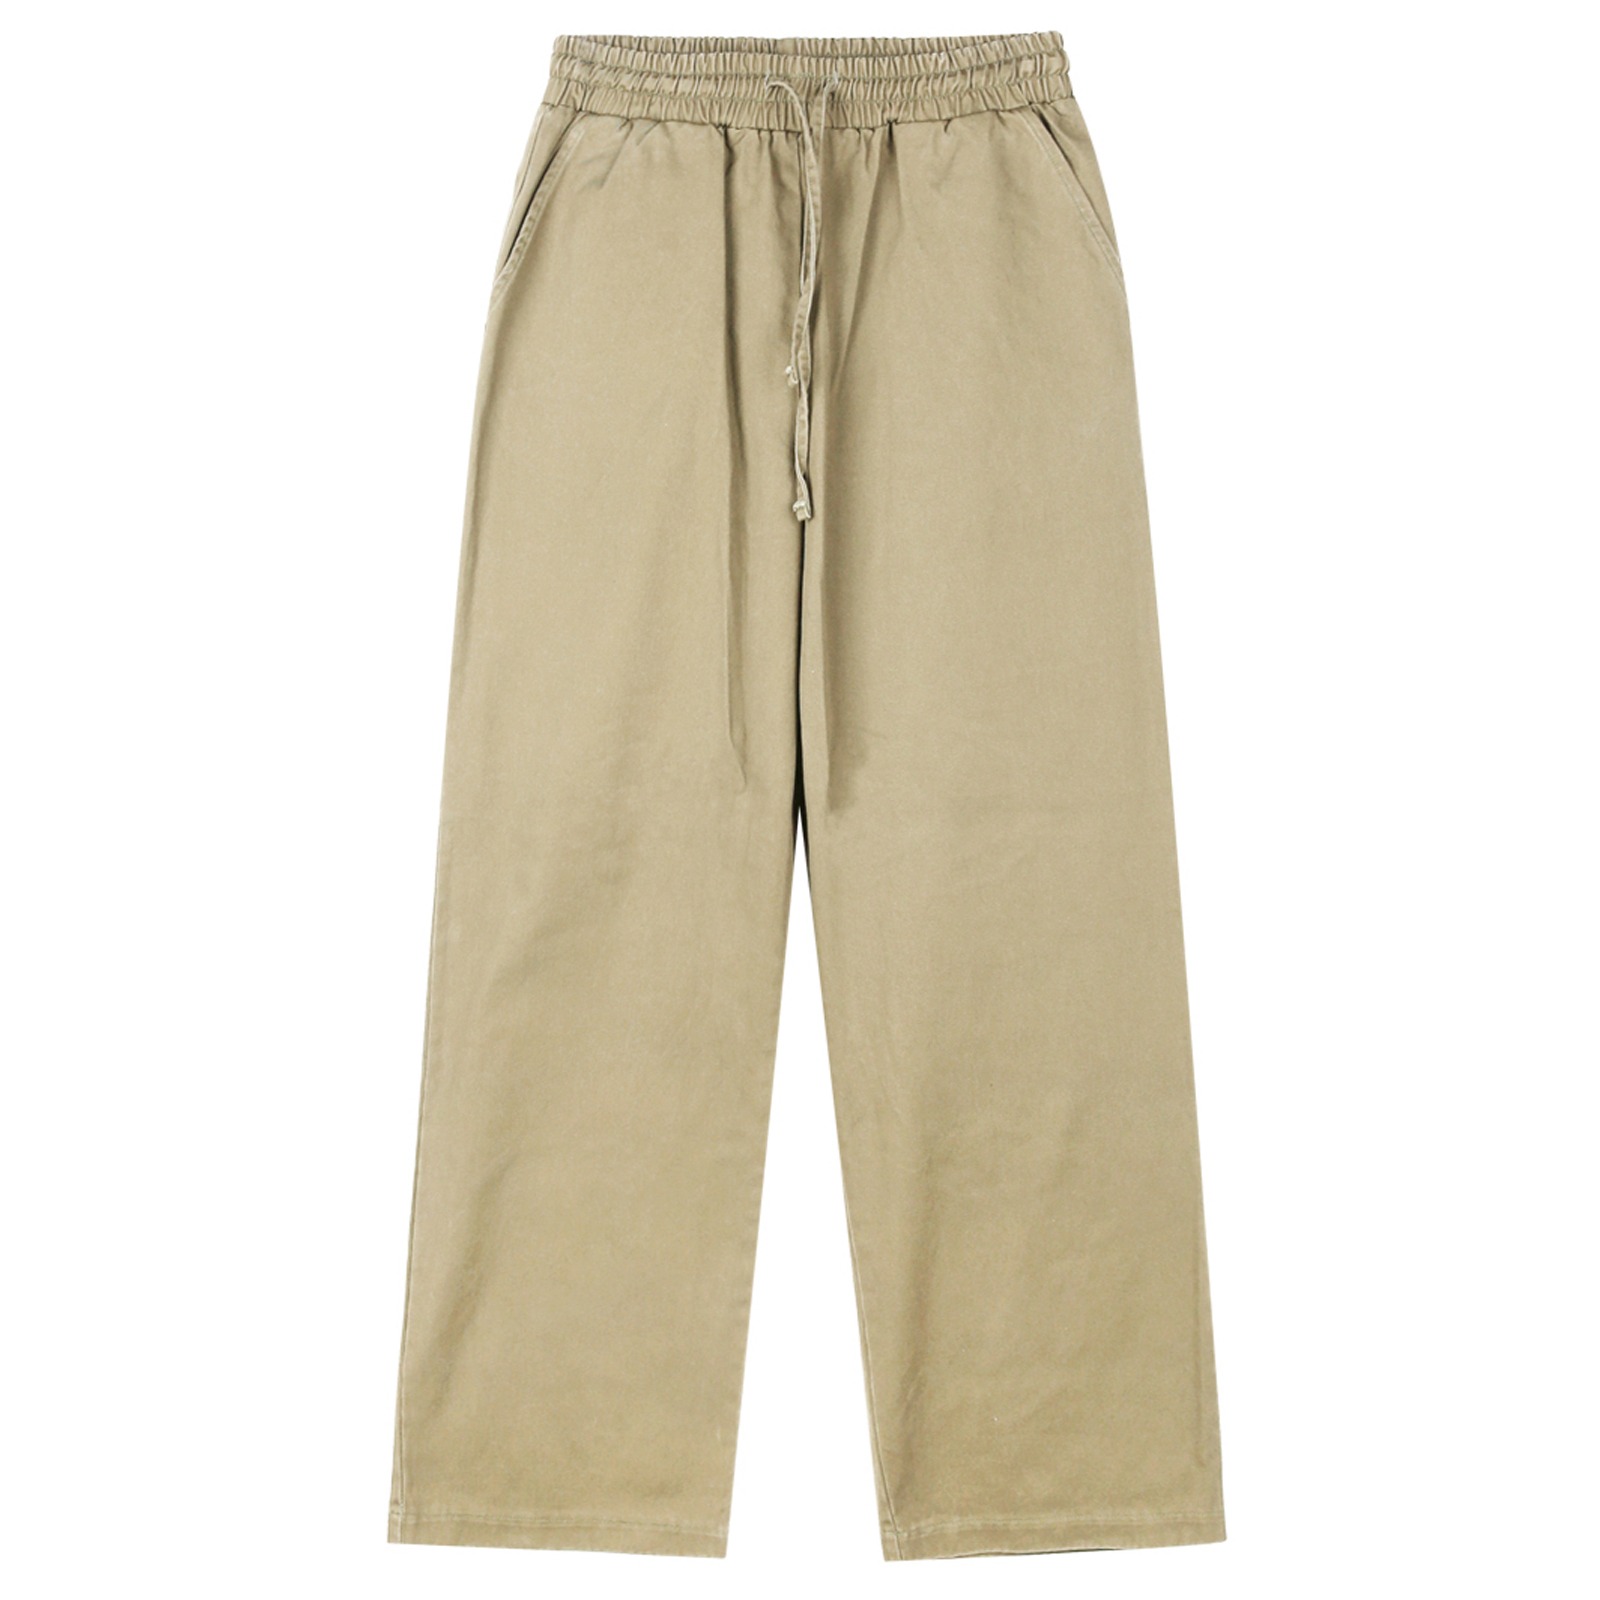 V149 wide cotton banding pants (beige)